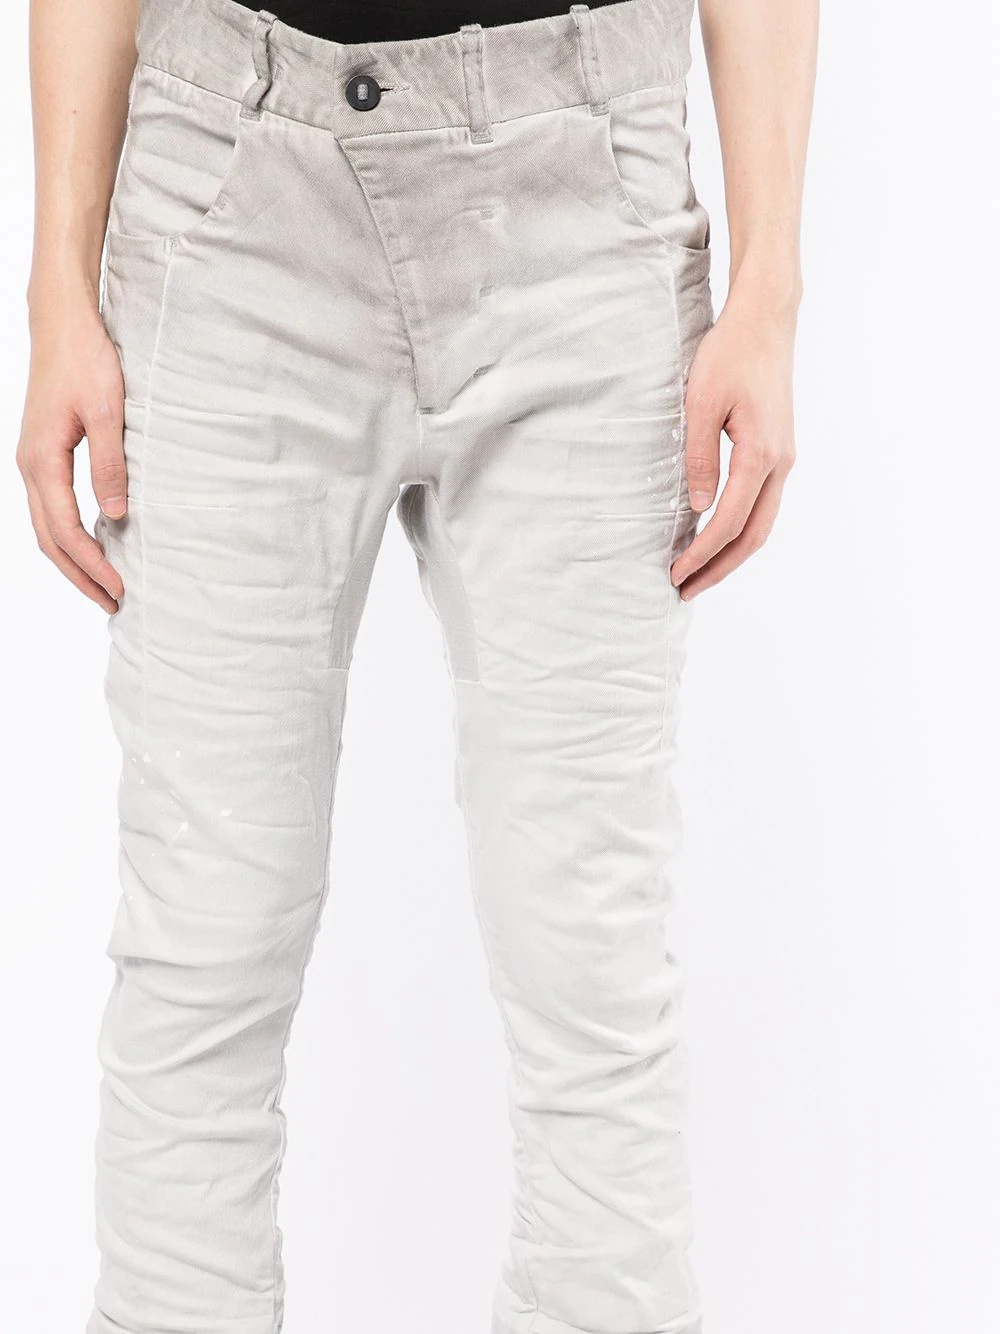 distressed-finish skinny-cut jeans - 5